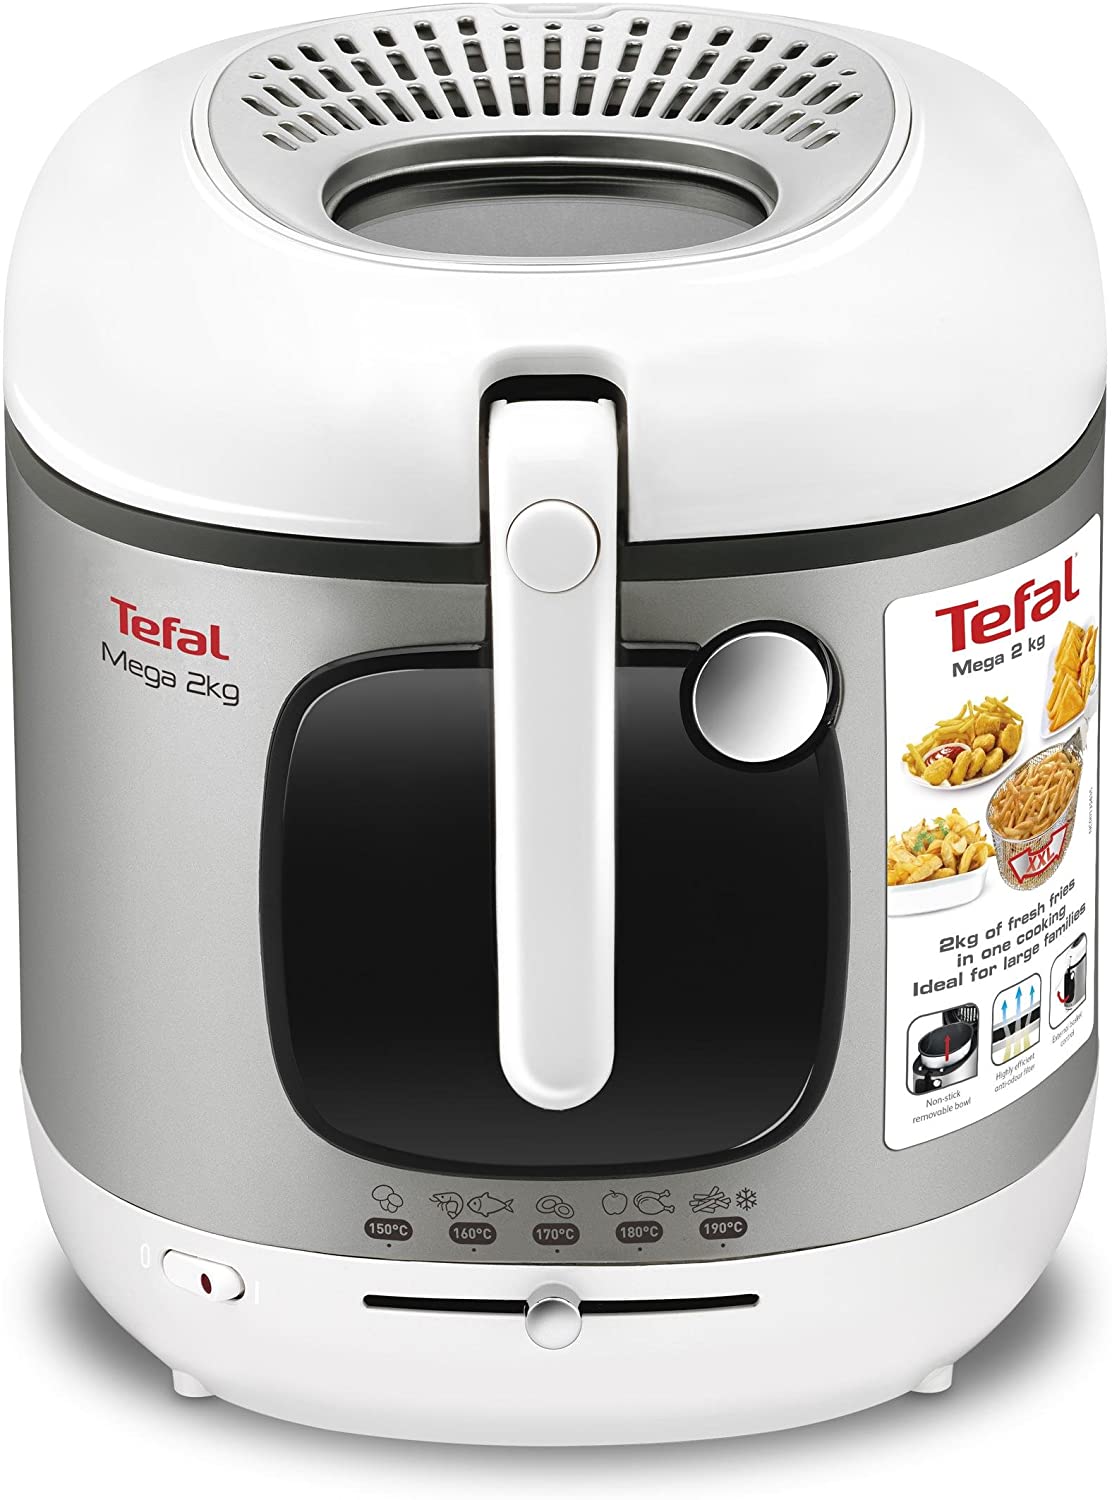 Tefal FR4800 Freestanding Fryer Only 2 kg, 150 °C, 190 °C, 8 People (S), On